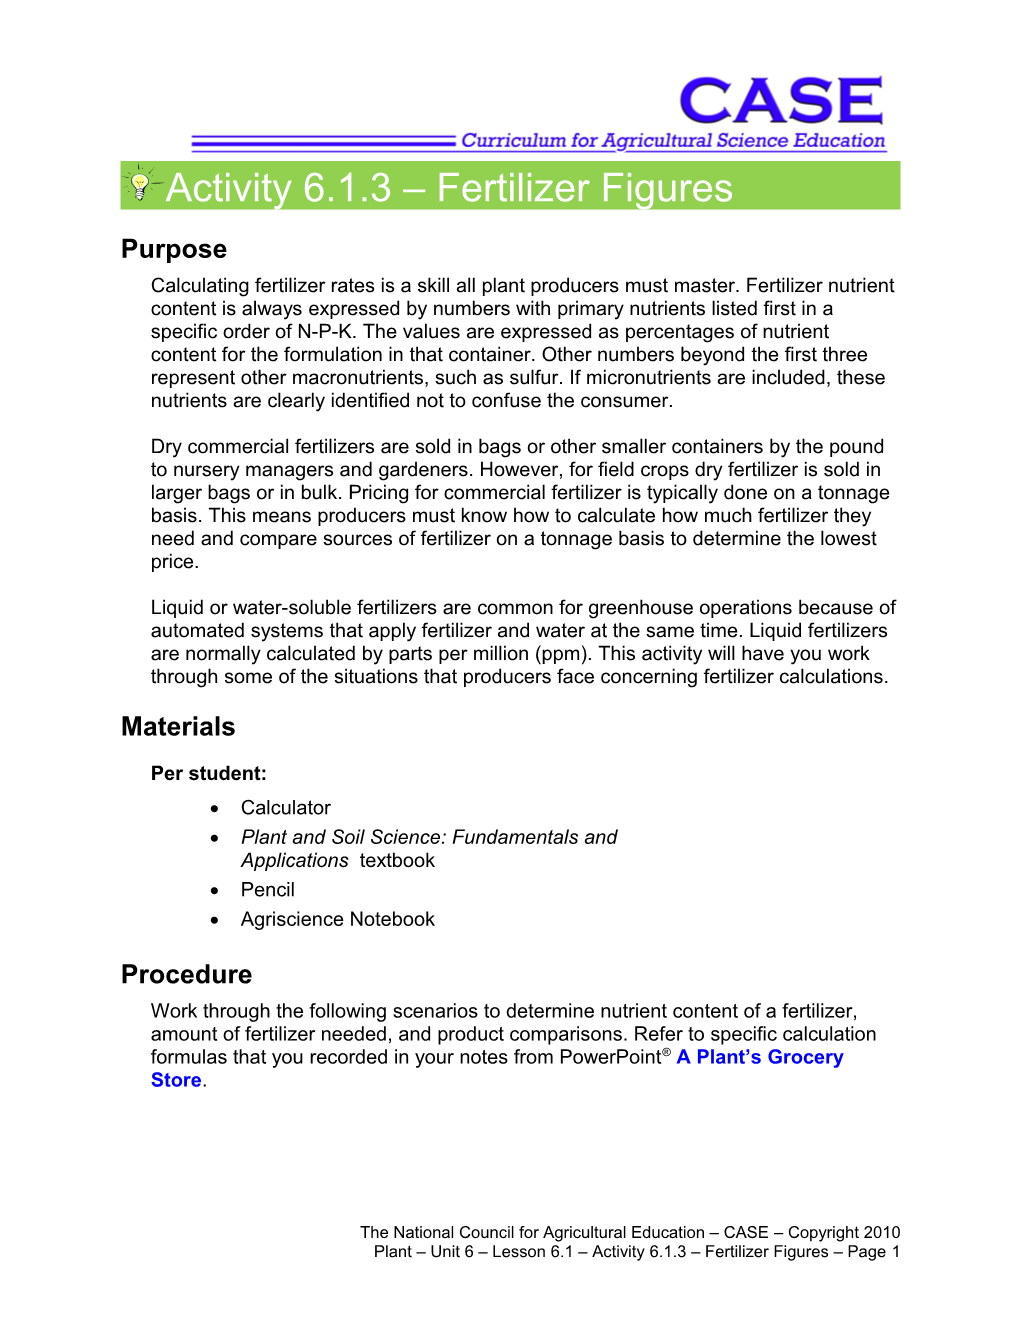 Activity 6.1.3 Fertilizer Figures